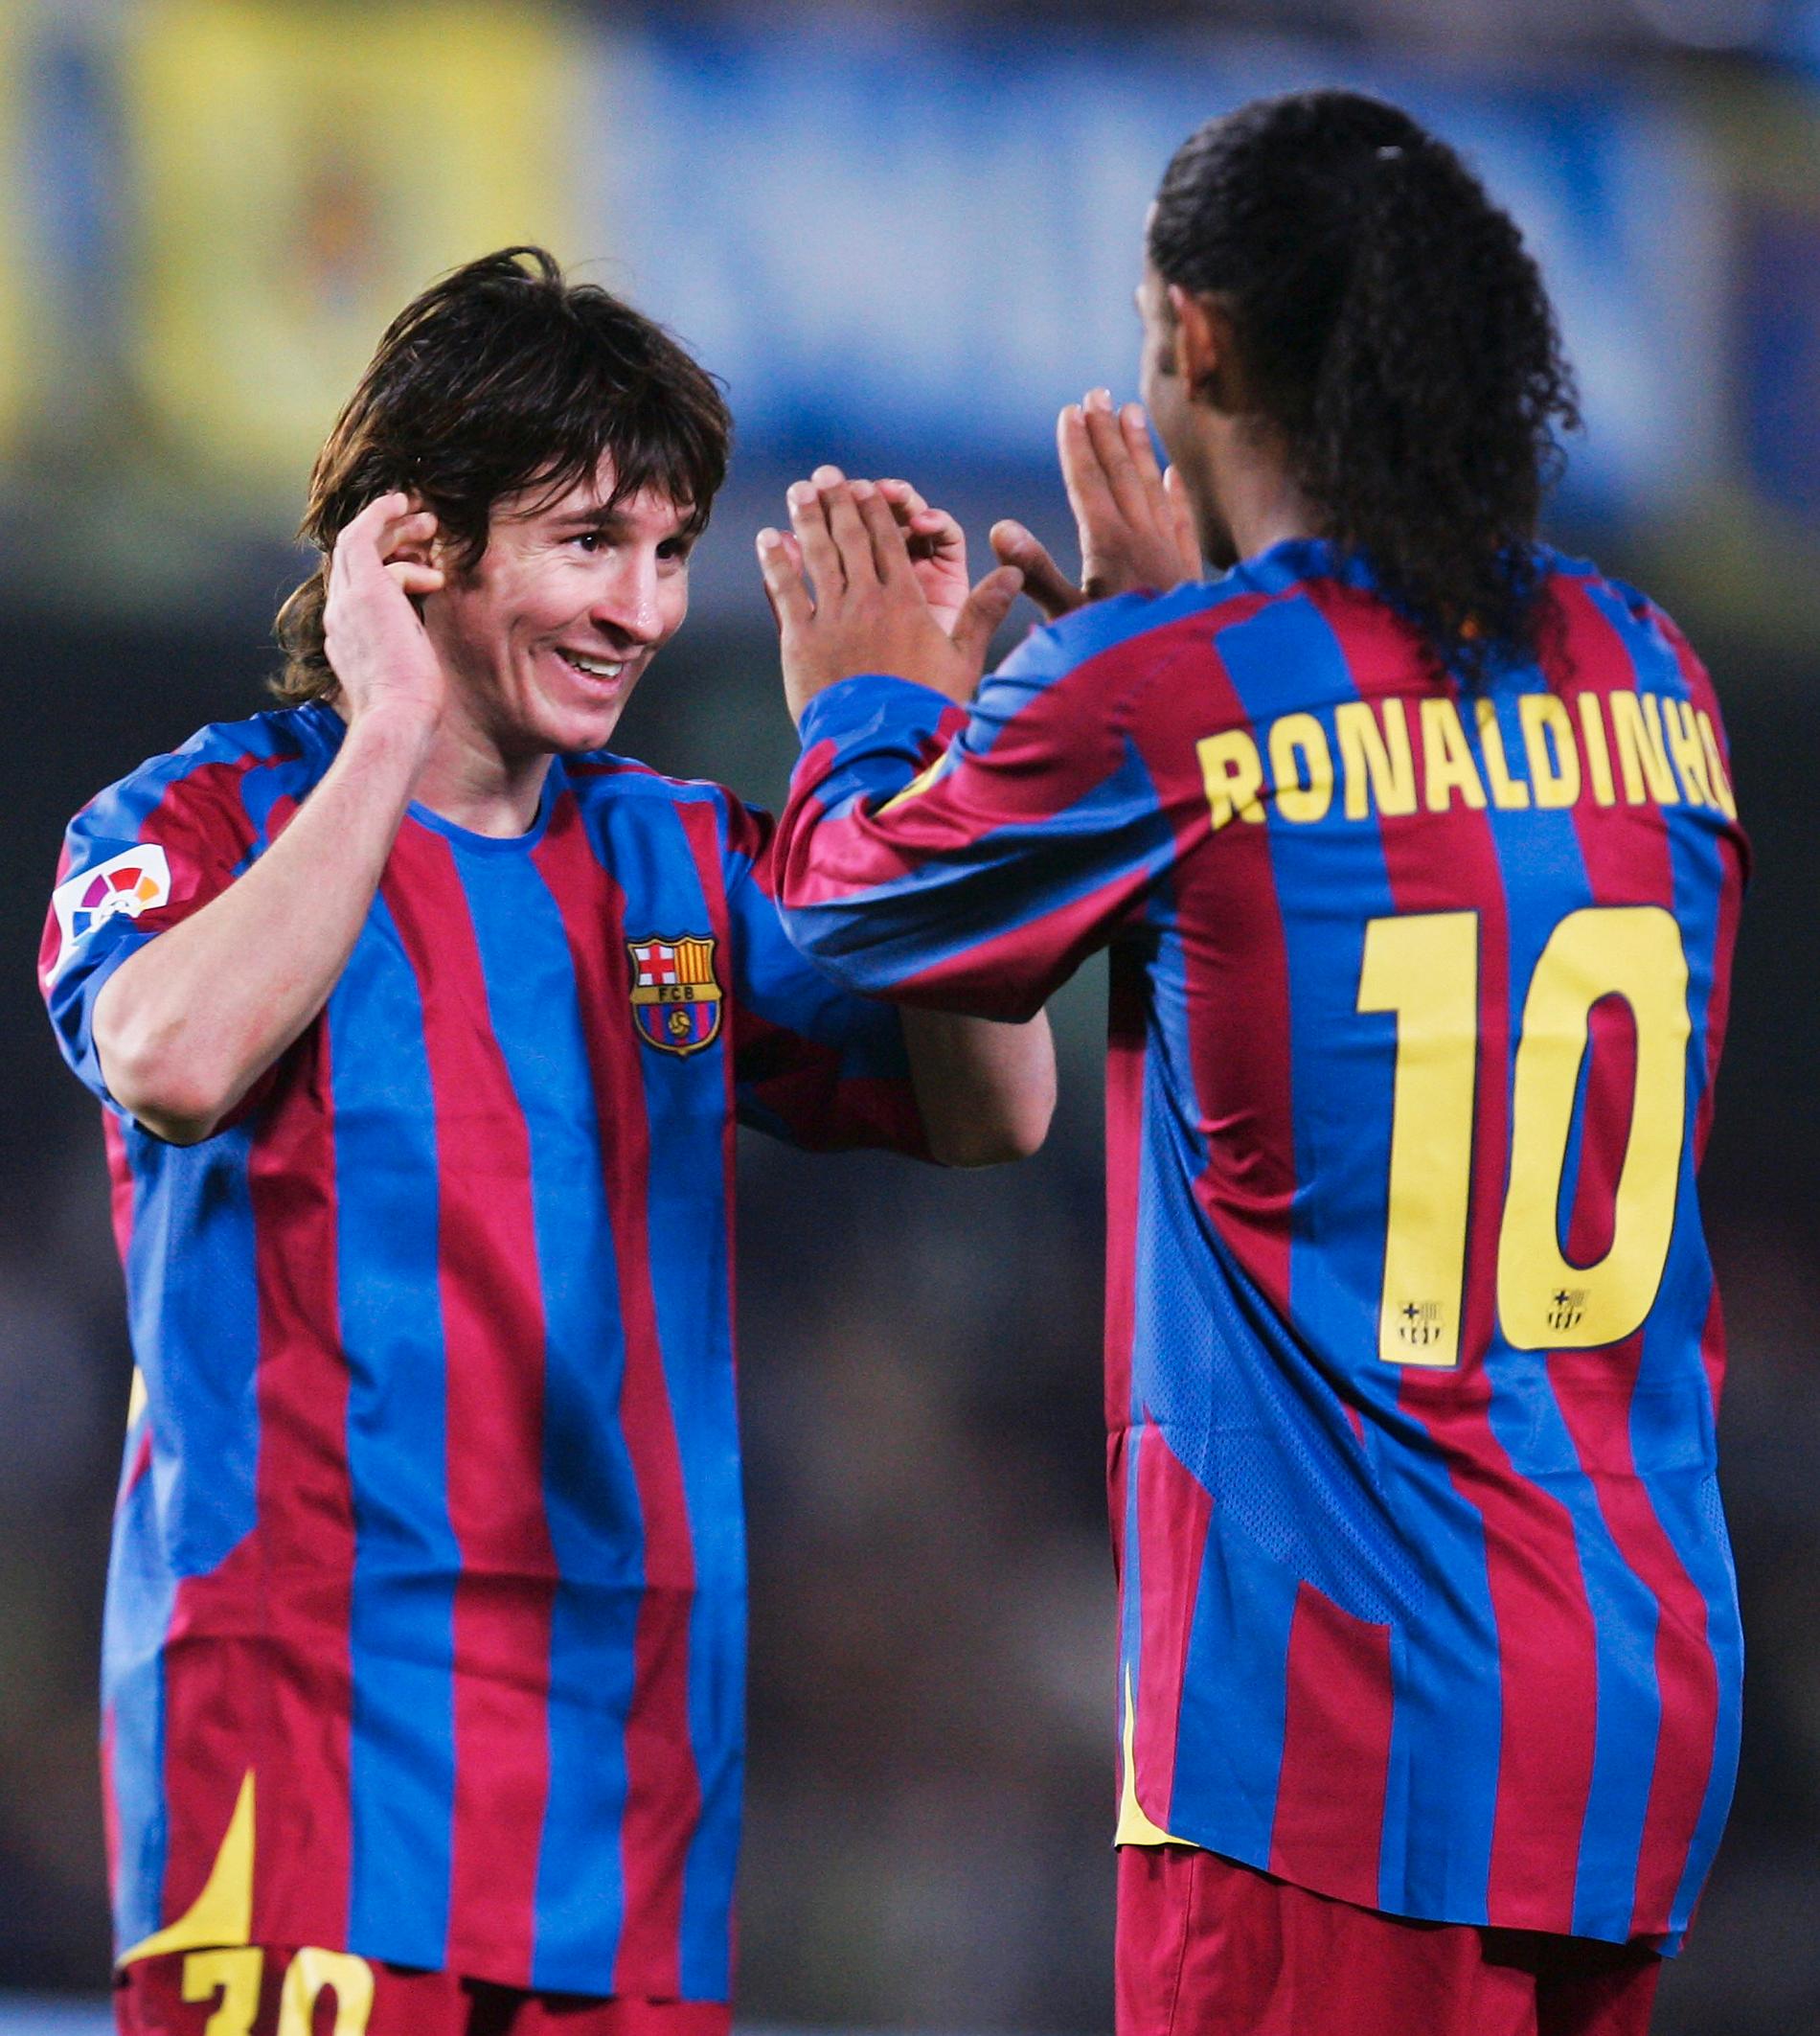 Messi och Ronaldinho.